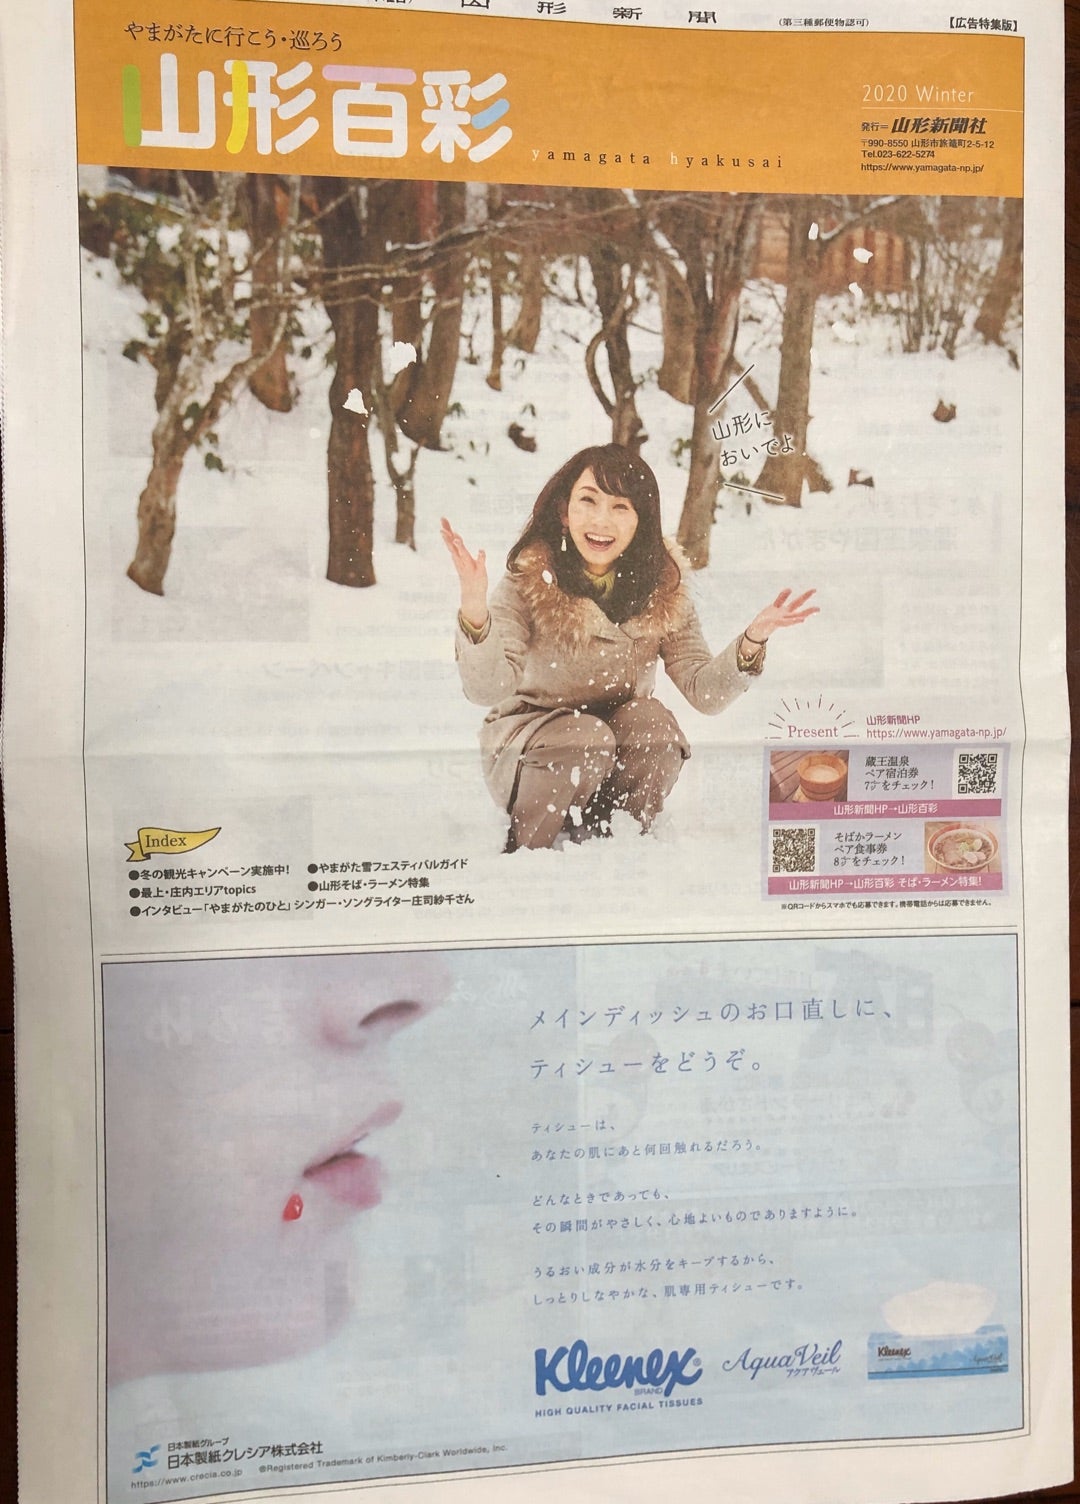 山形新聞♪ | 庄司紗千 shoji-sachiオフィシャルブログ